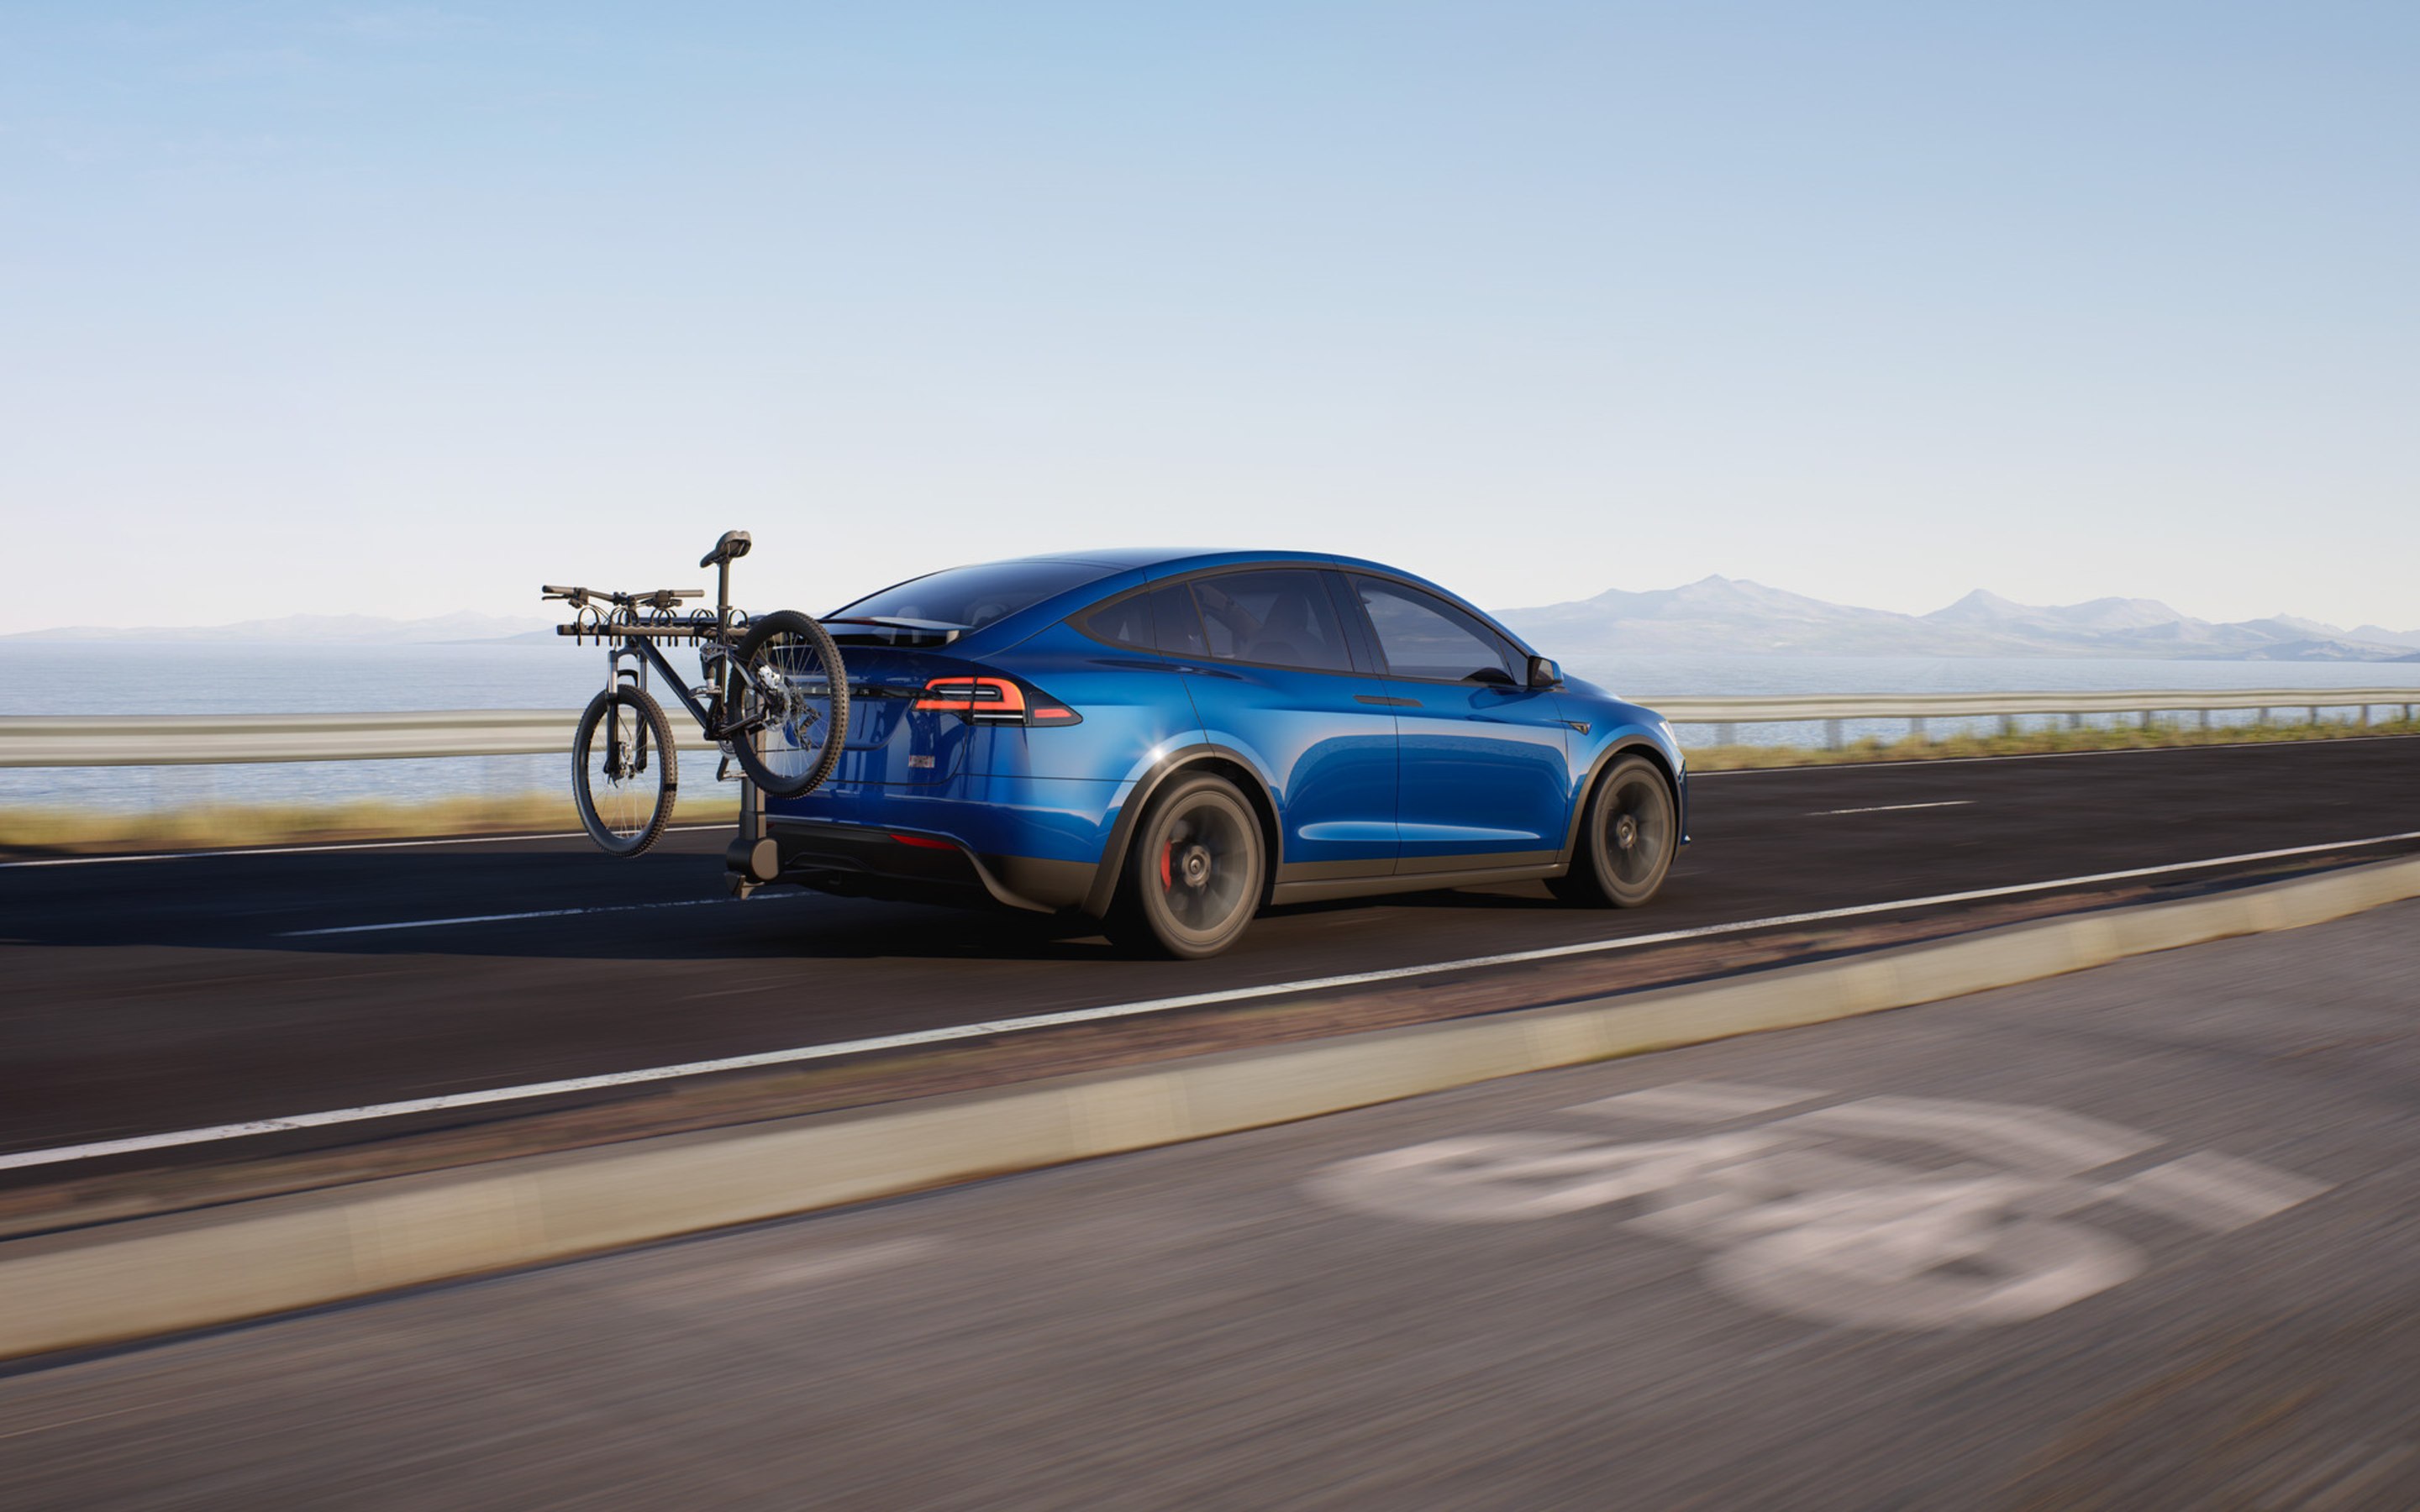 Widok z tyłu na niebieski Model X Plaid jadącego autostradą z rowerem zamontowanym na bagażniku rowerowym